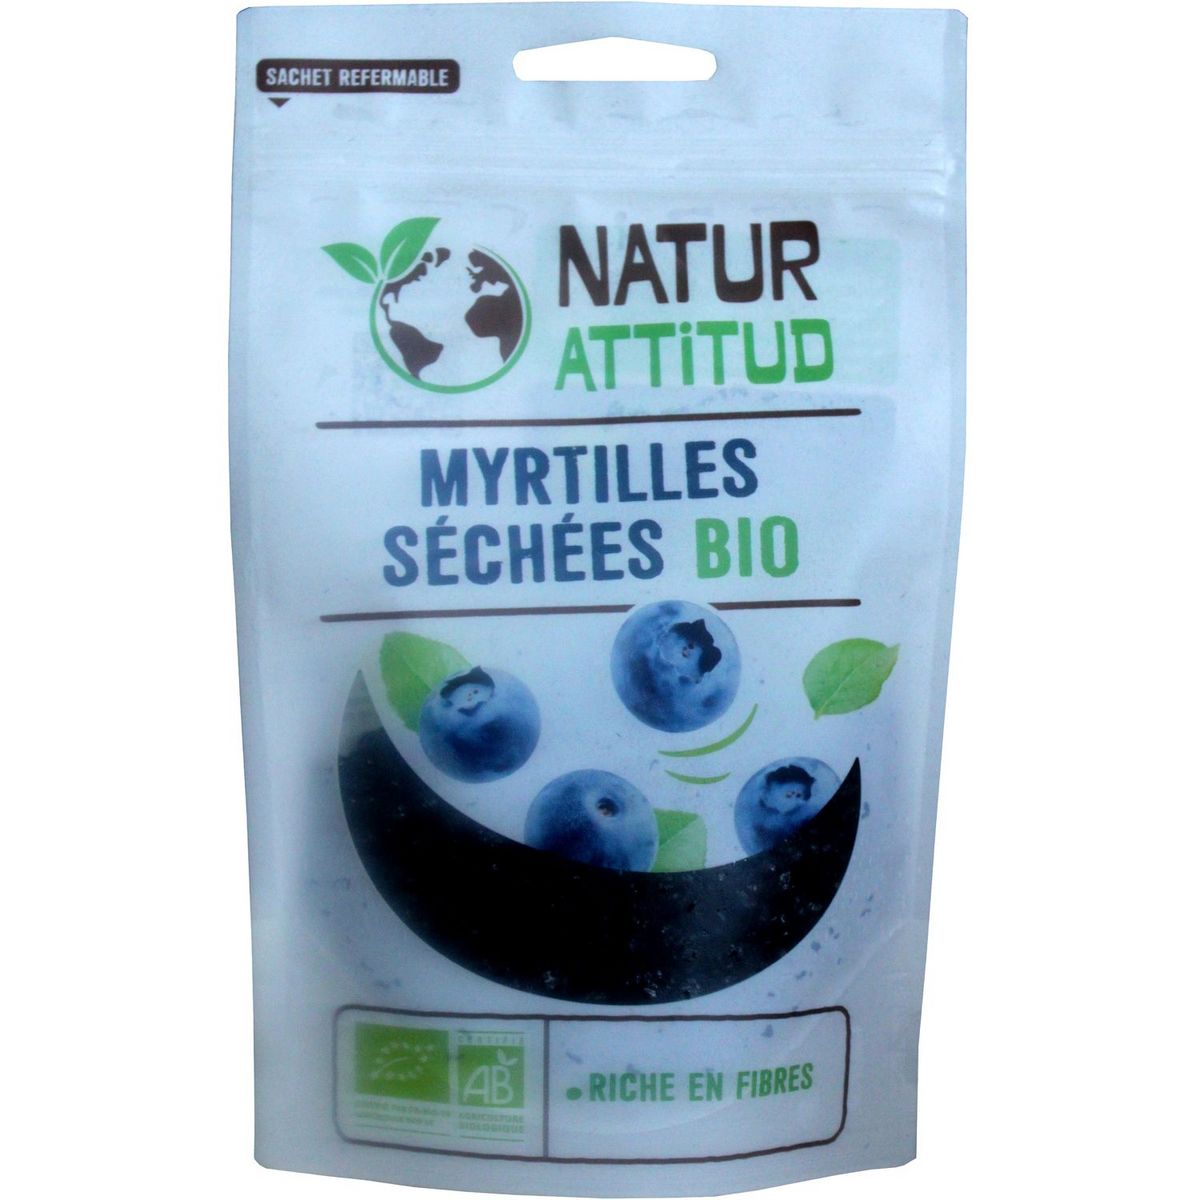 NATUR ATTITUD Myrtilles séchées bio 100g